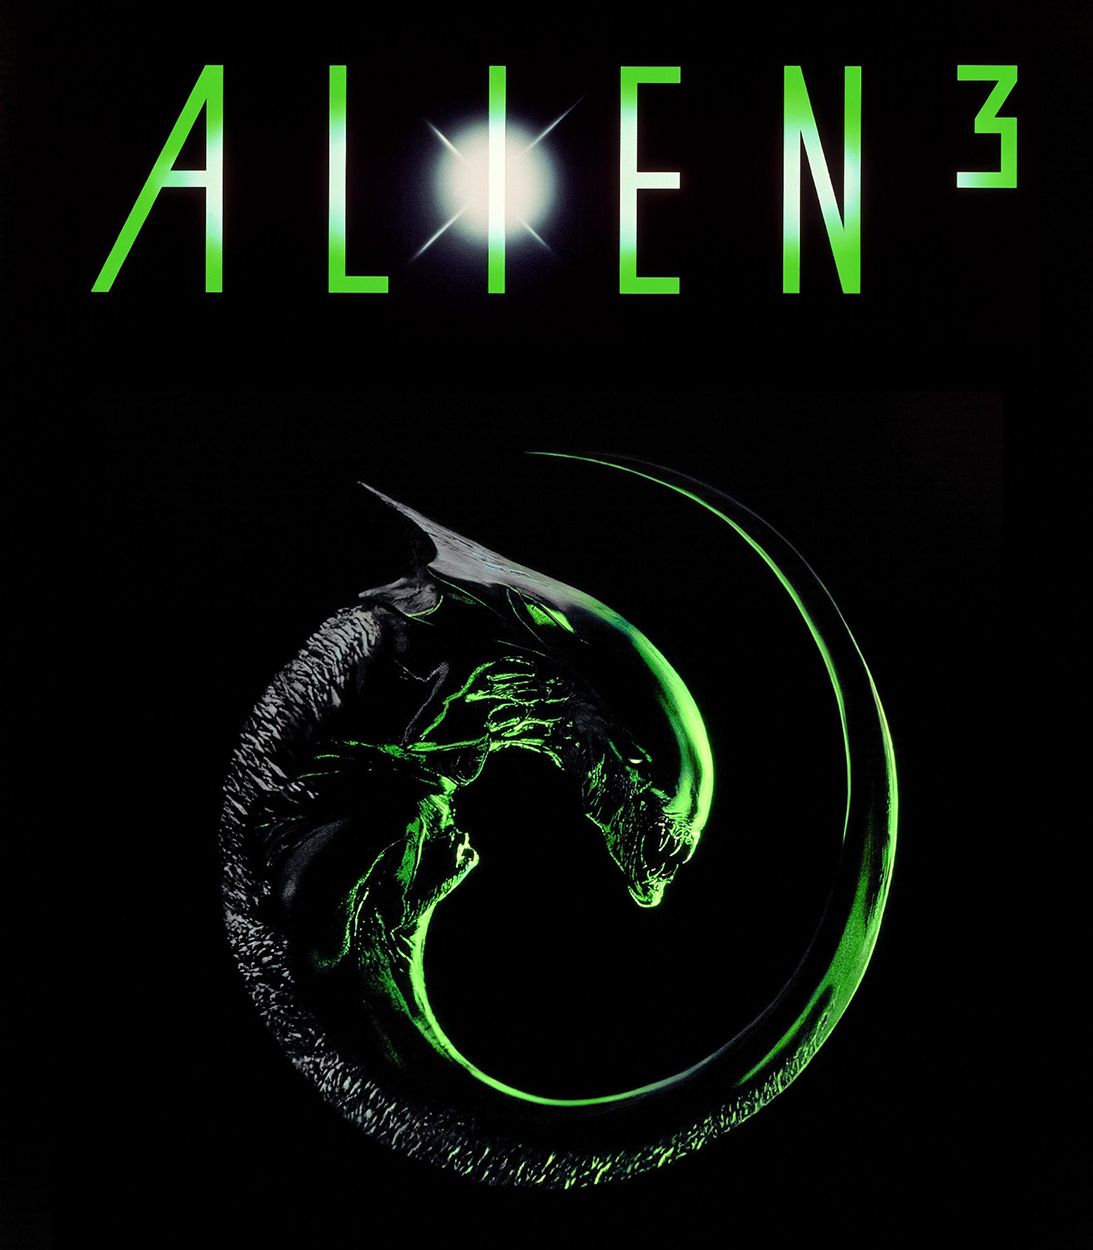 Alien 3 poster vertical